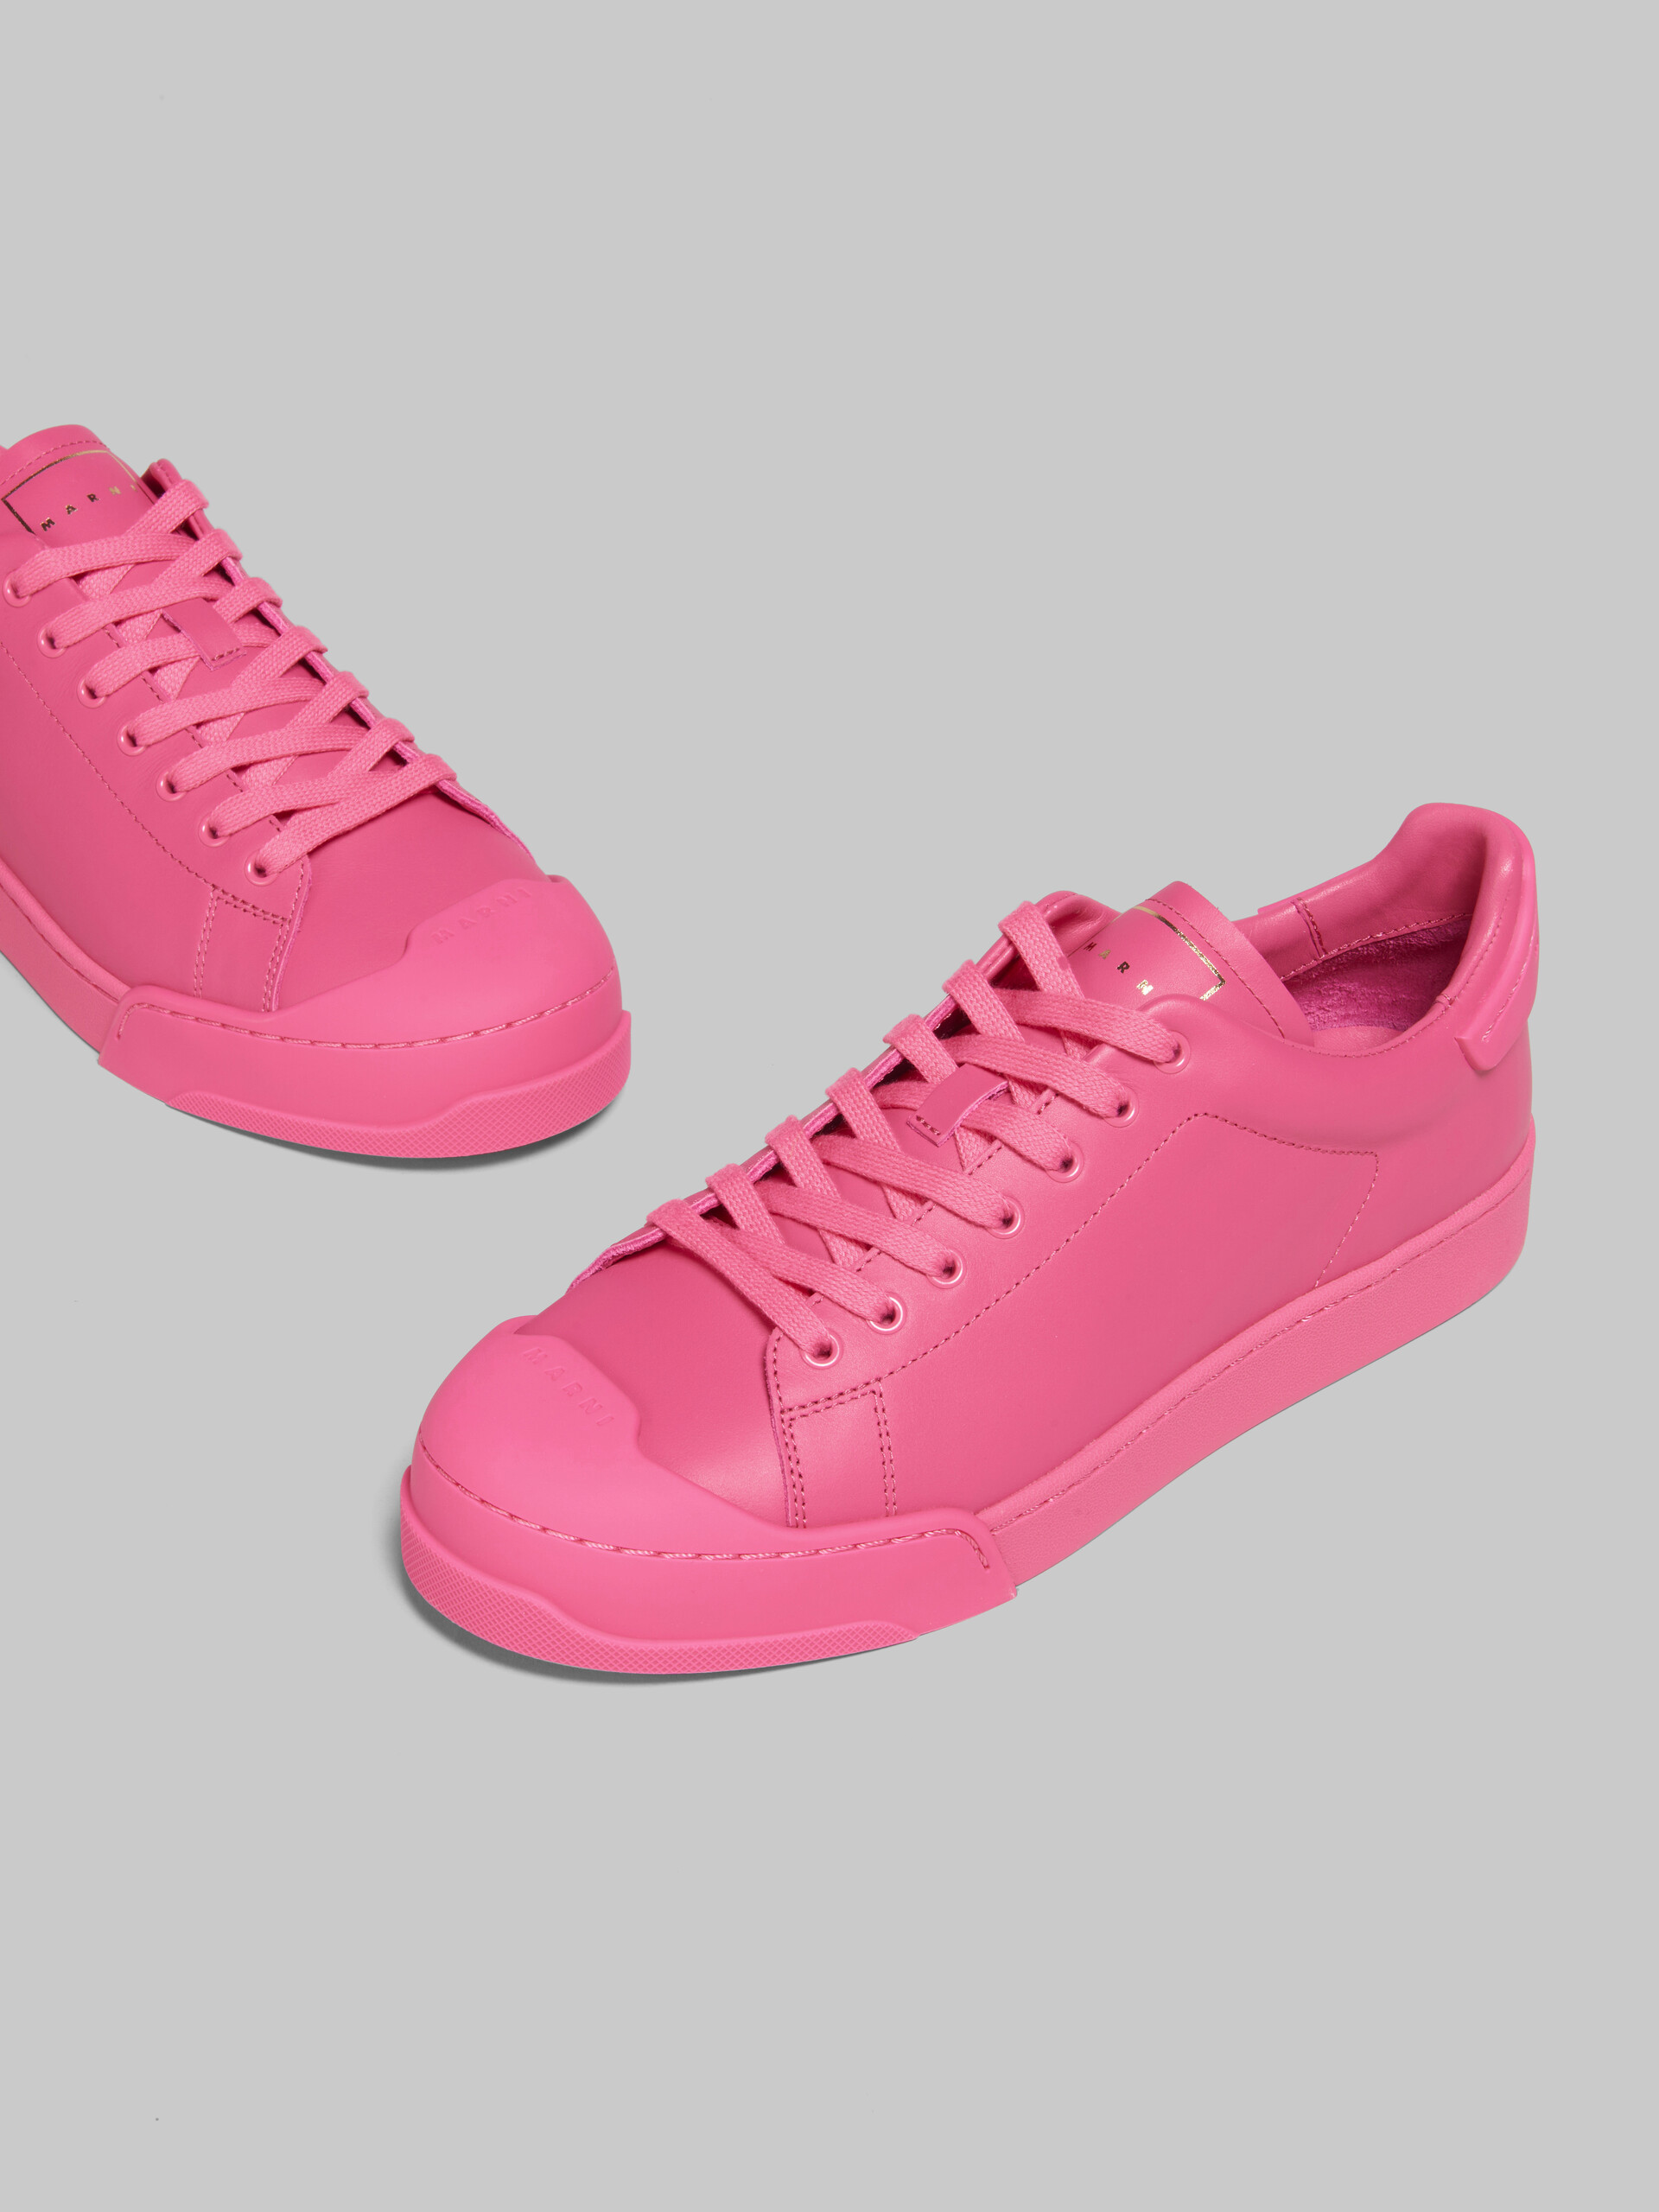 Pinkfarbene Sneakers Dada Bumper aus Leder - Sneakers - Image 5